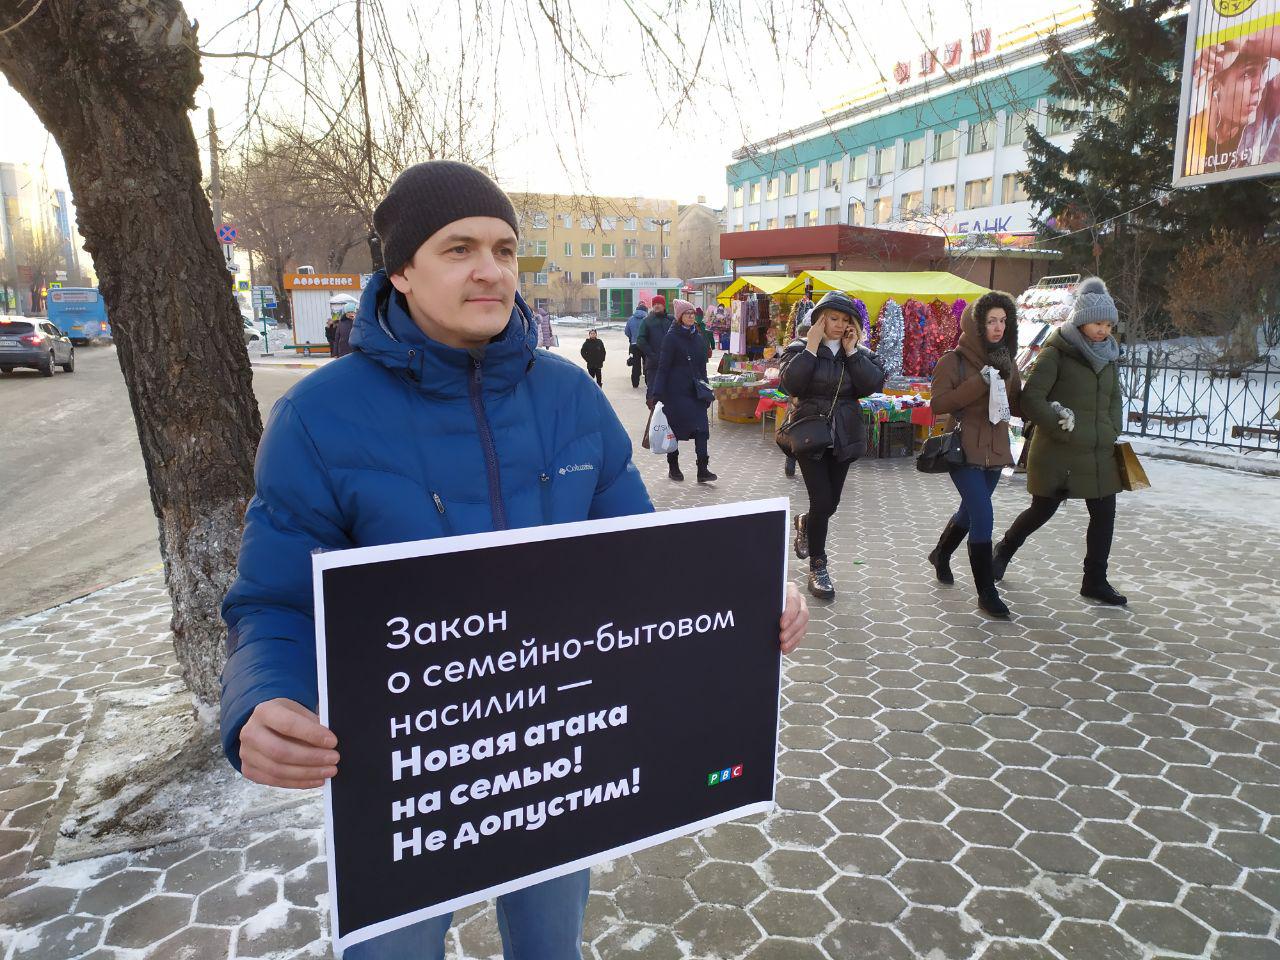 Пикет против закона о семейно-бытовом насилии в Благовещенске, 15.12.2019